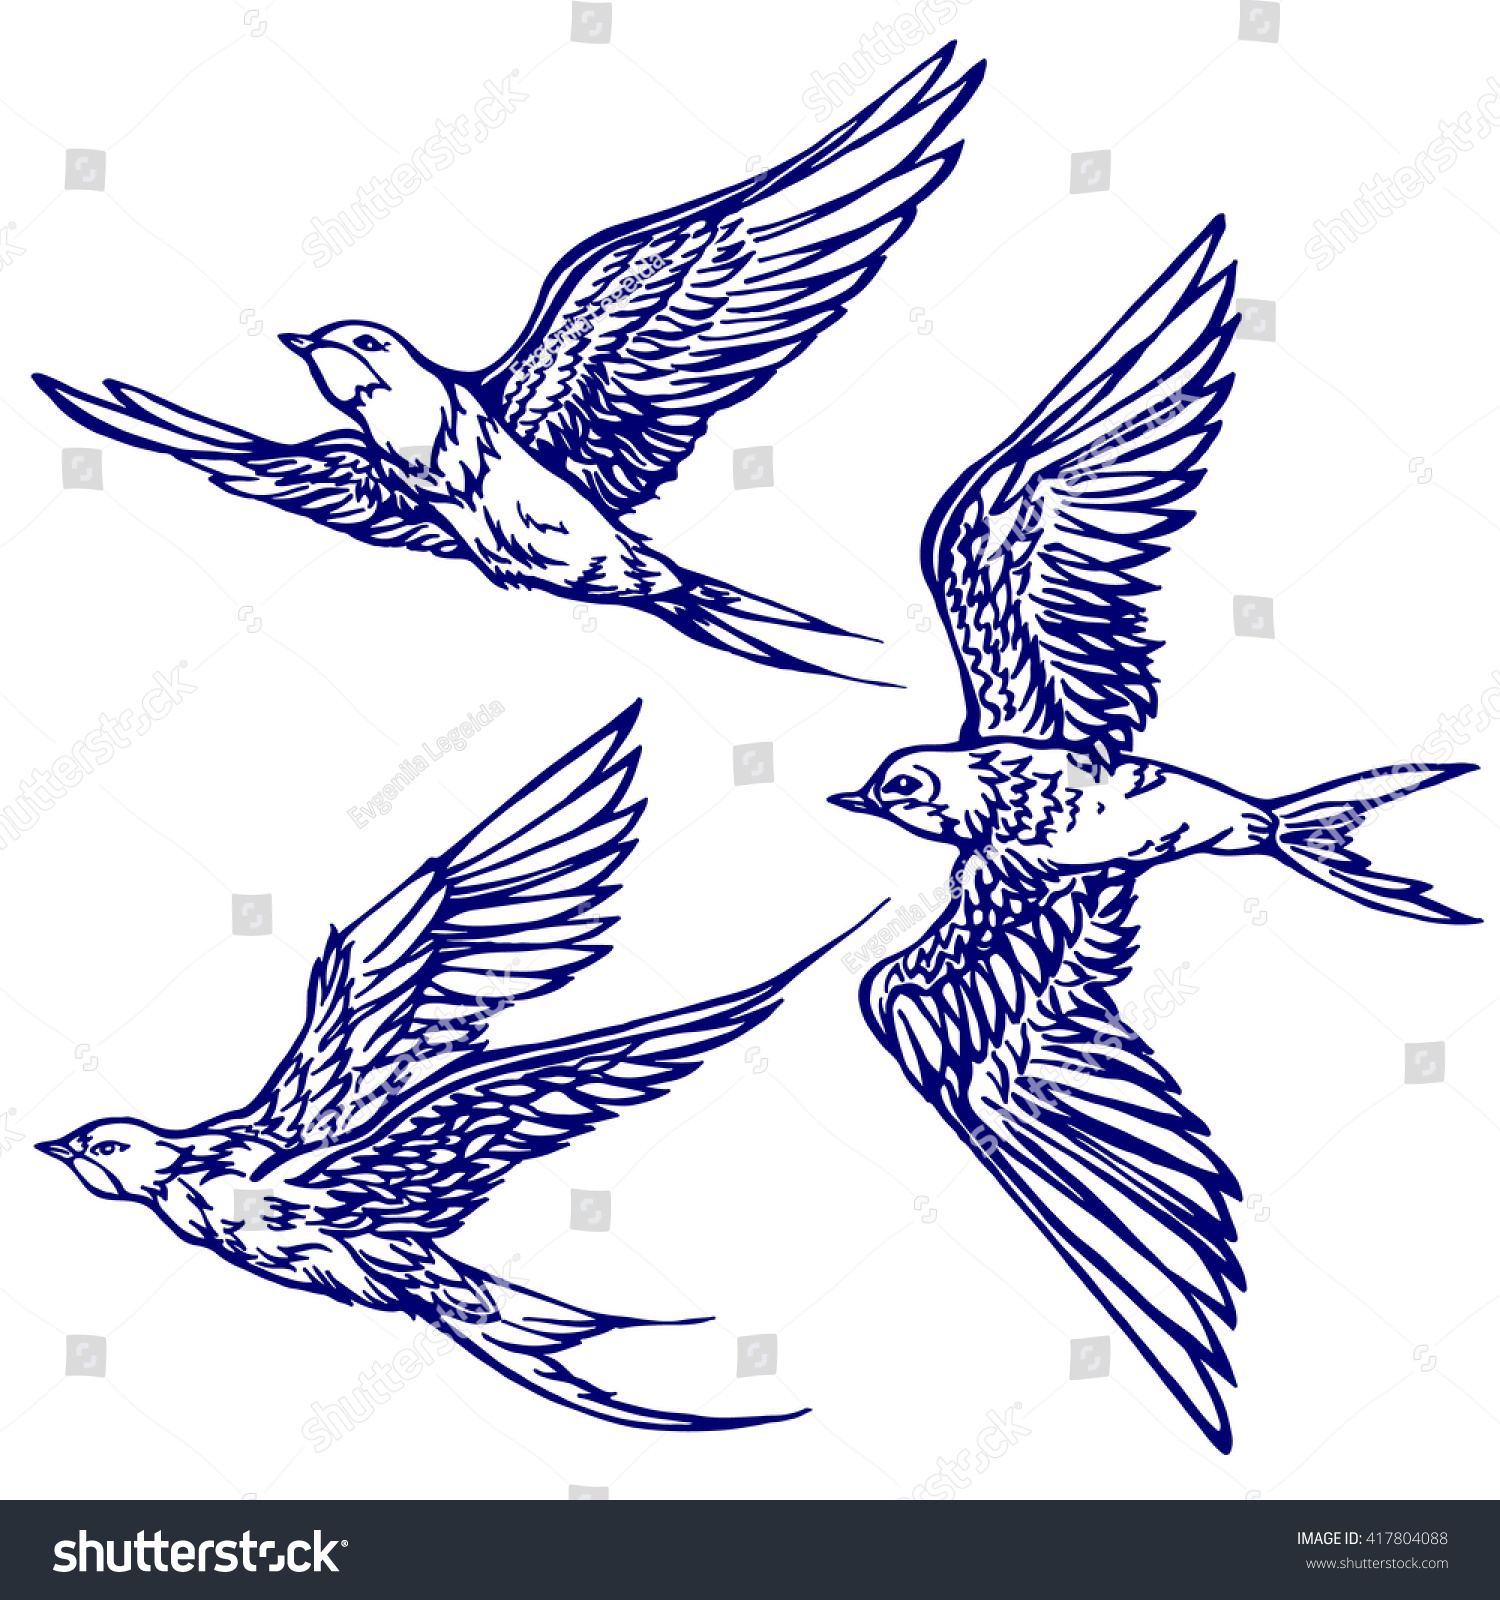 Swallows three